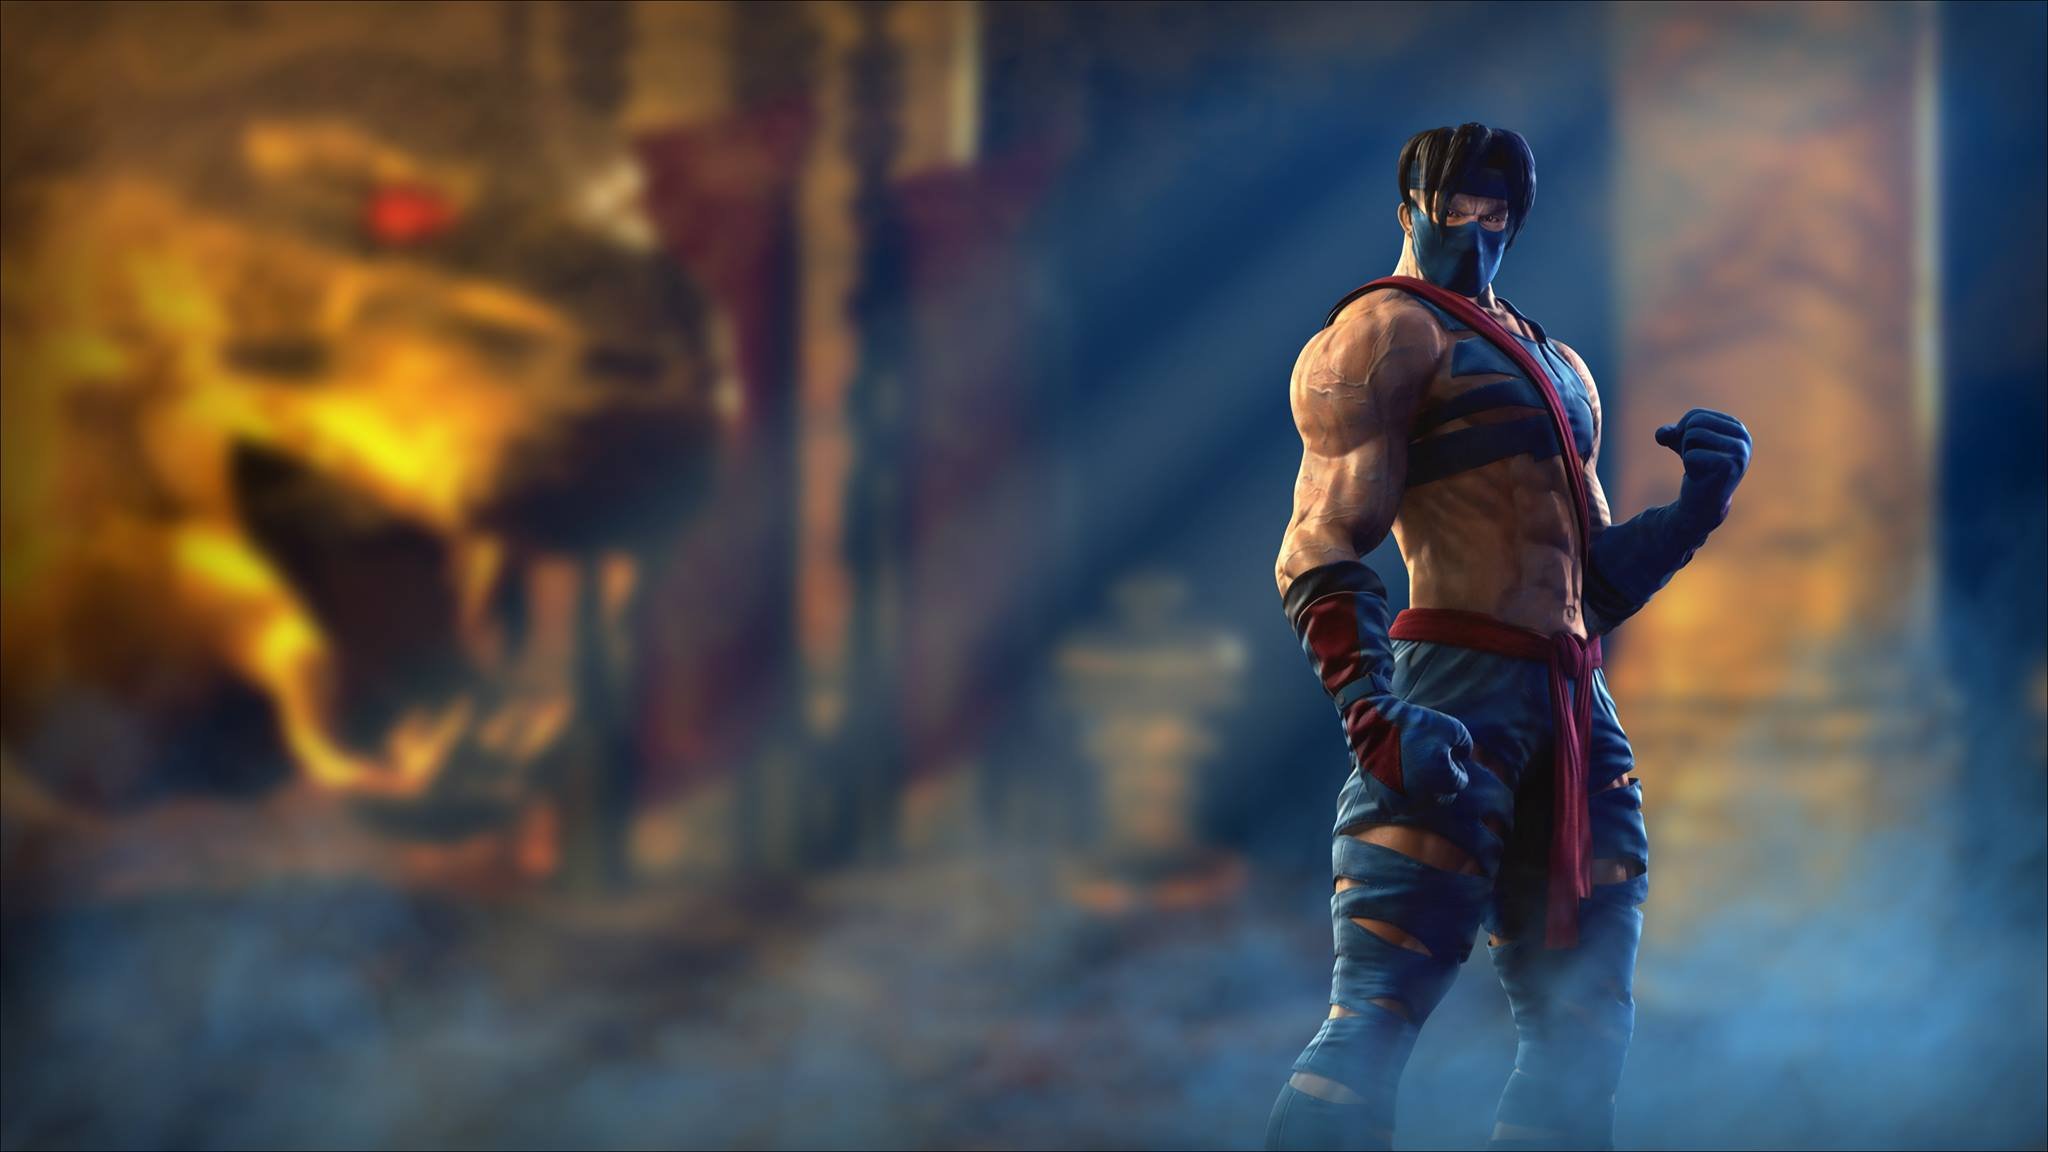 Killer Instinct Fighting Fantasy Game Wallpaper Background